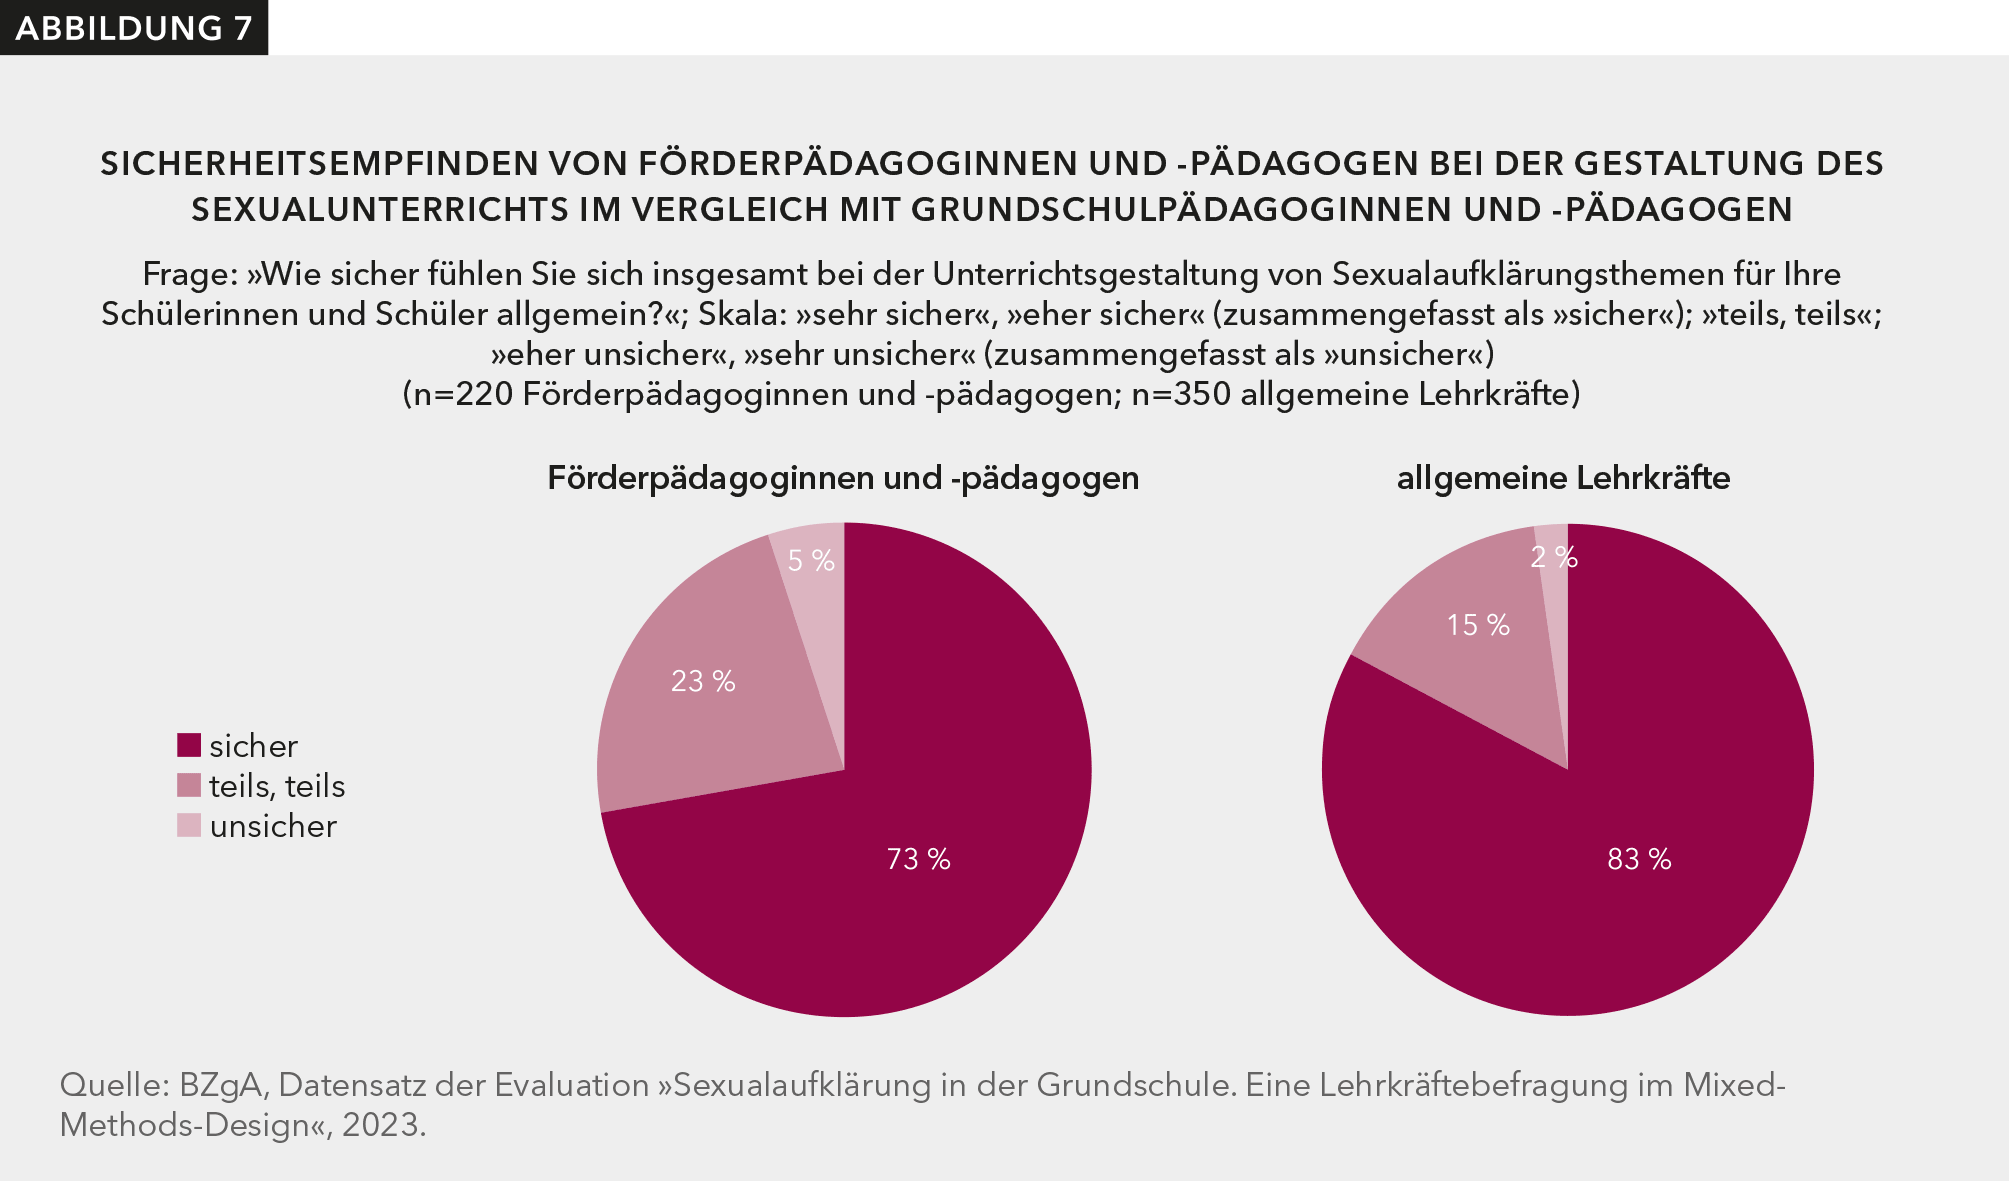 Abbildung 7 zeigt, dass sich die meisten Förderpädagoginnen und -pädagogen sicher bei der Unterrichtsgestaltung im Bereich Sexualaufklärung sicher fühlen (73 %).